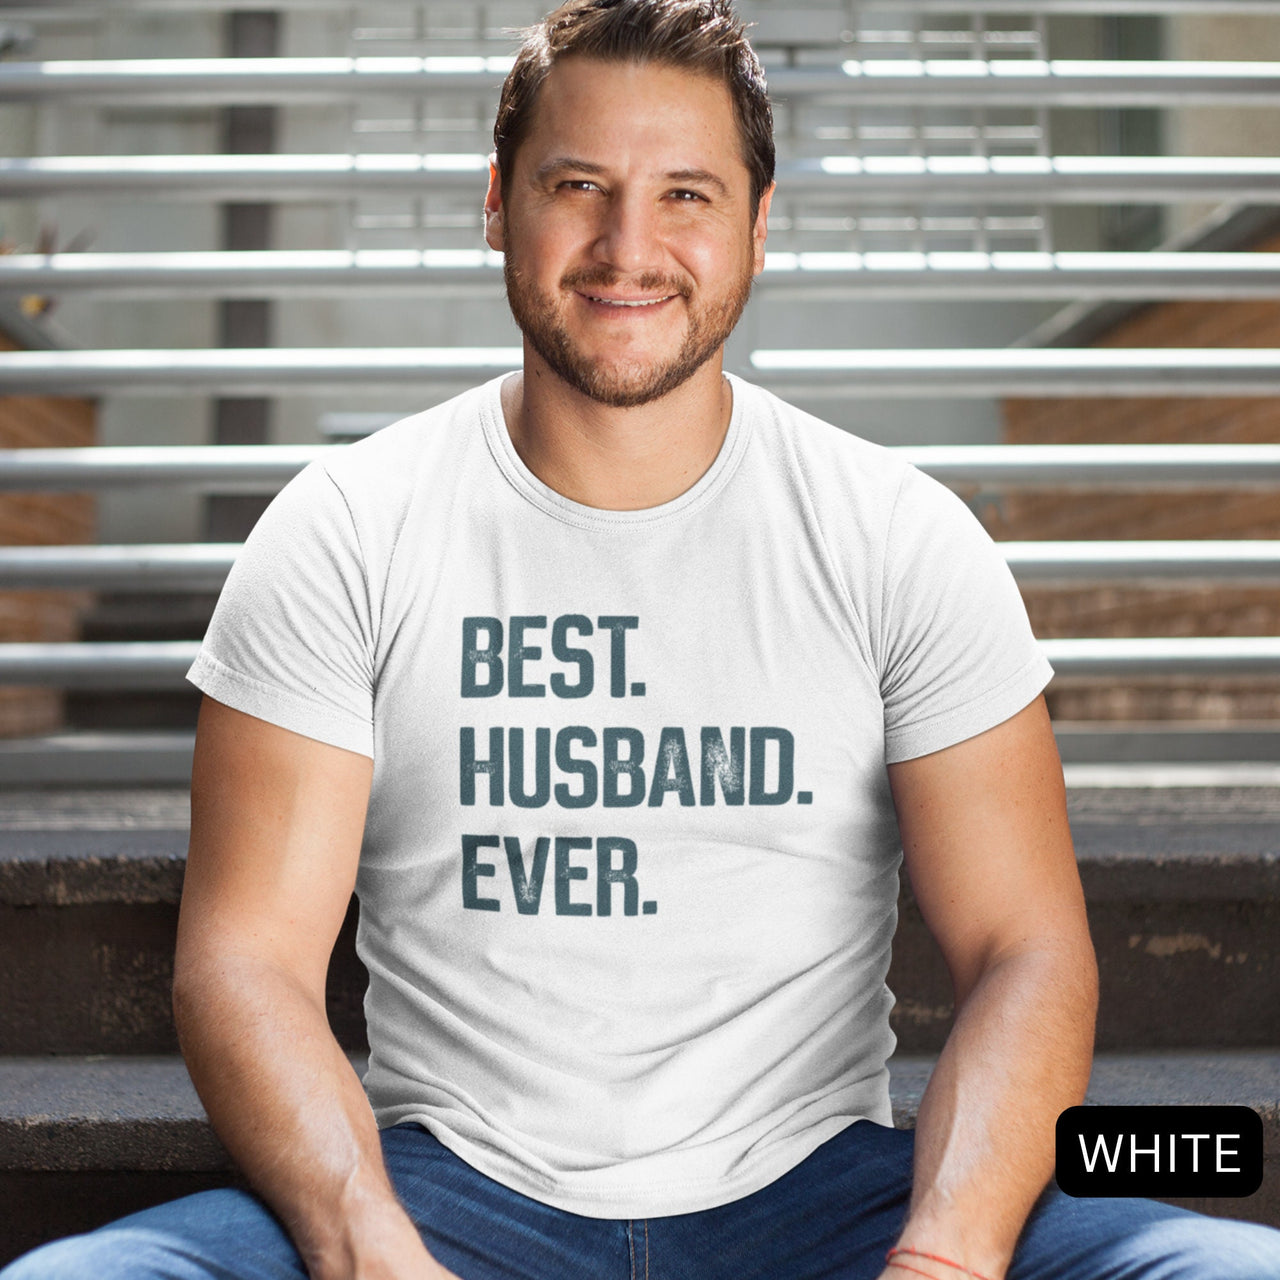 Best Husband T-Shirt